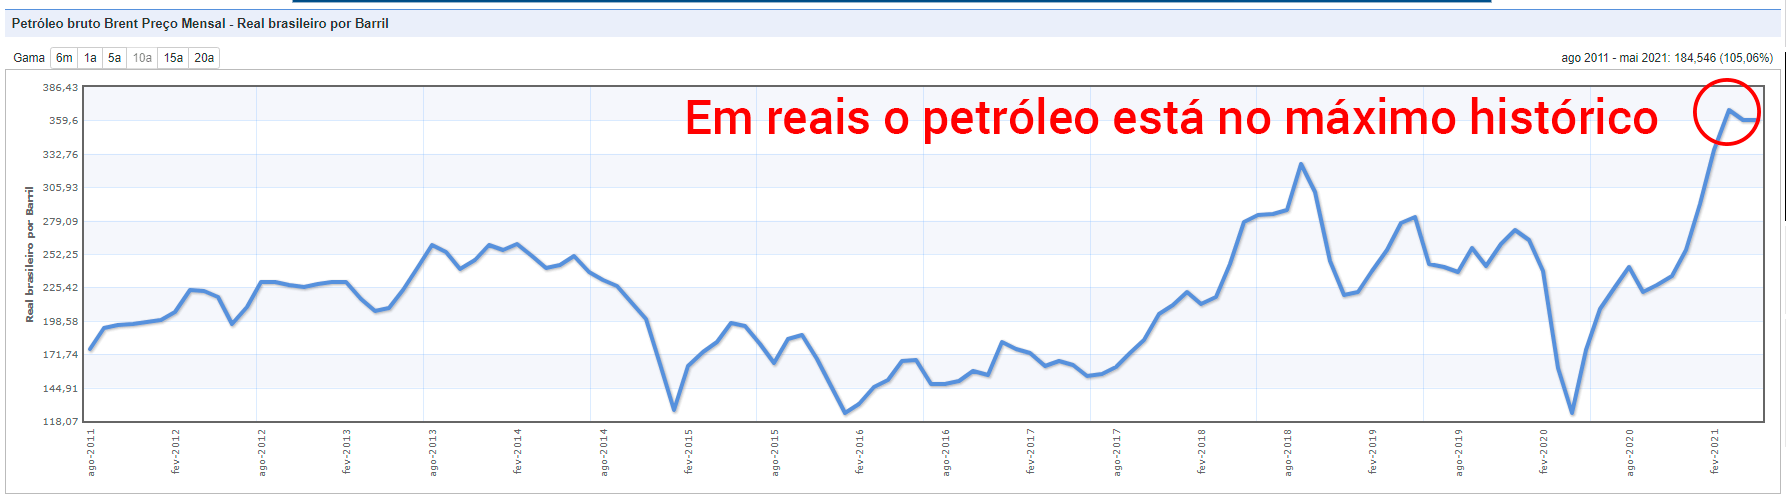 Grafico da cotação do petroleo em reais ao longo dos anos - máxima histórica